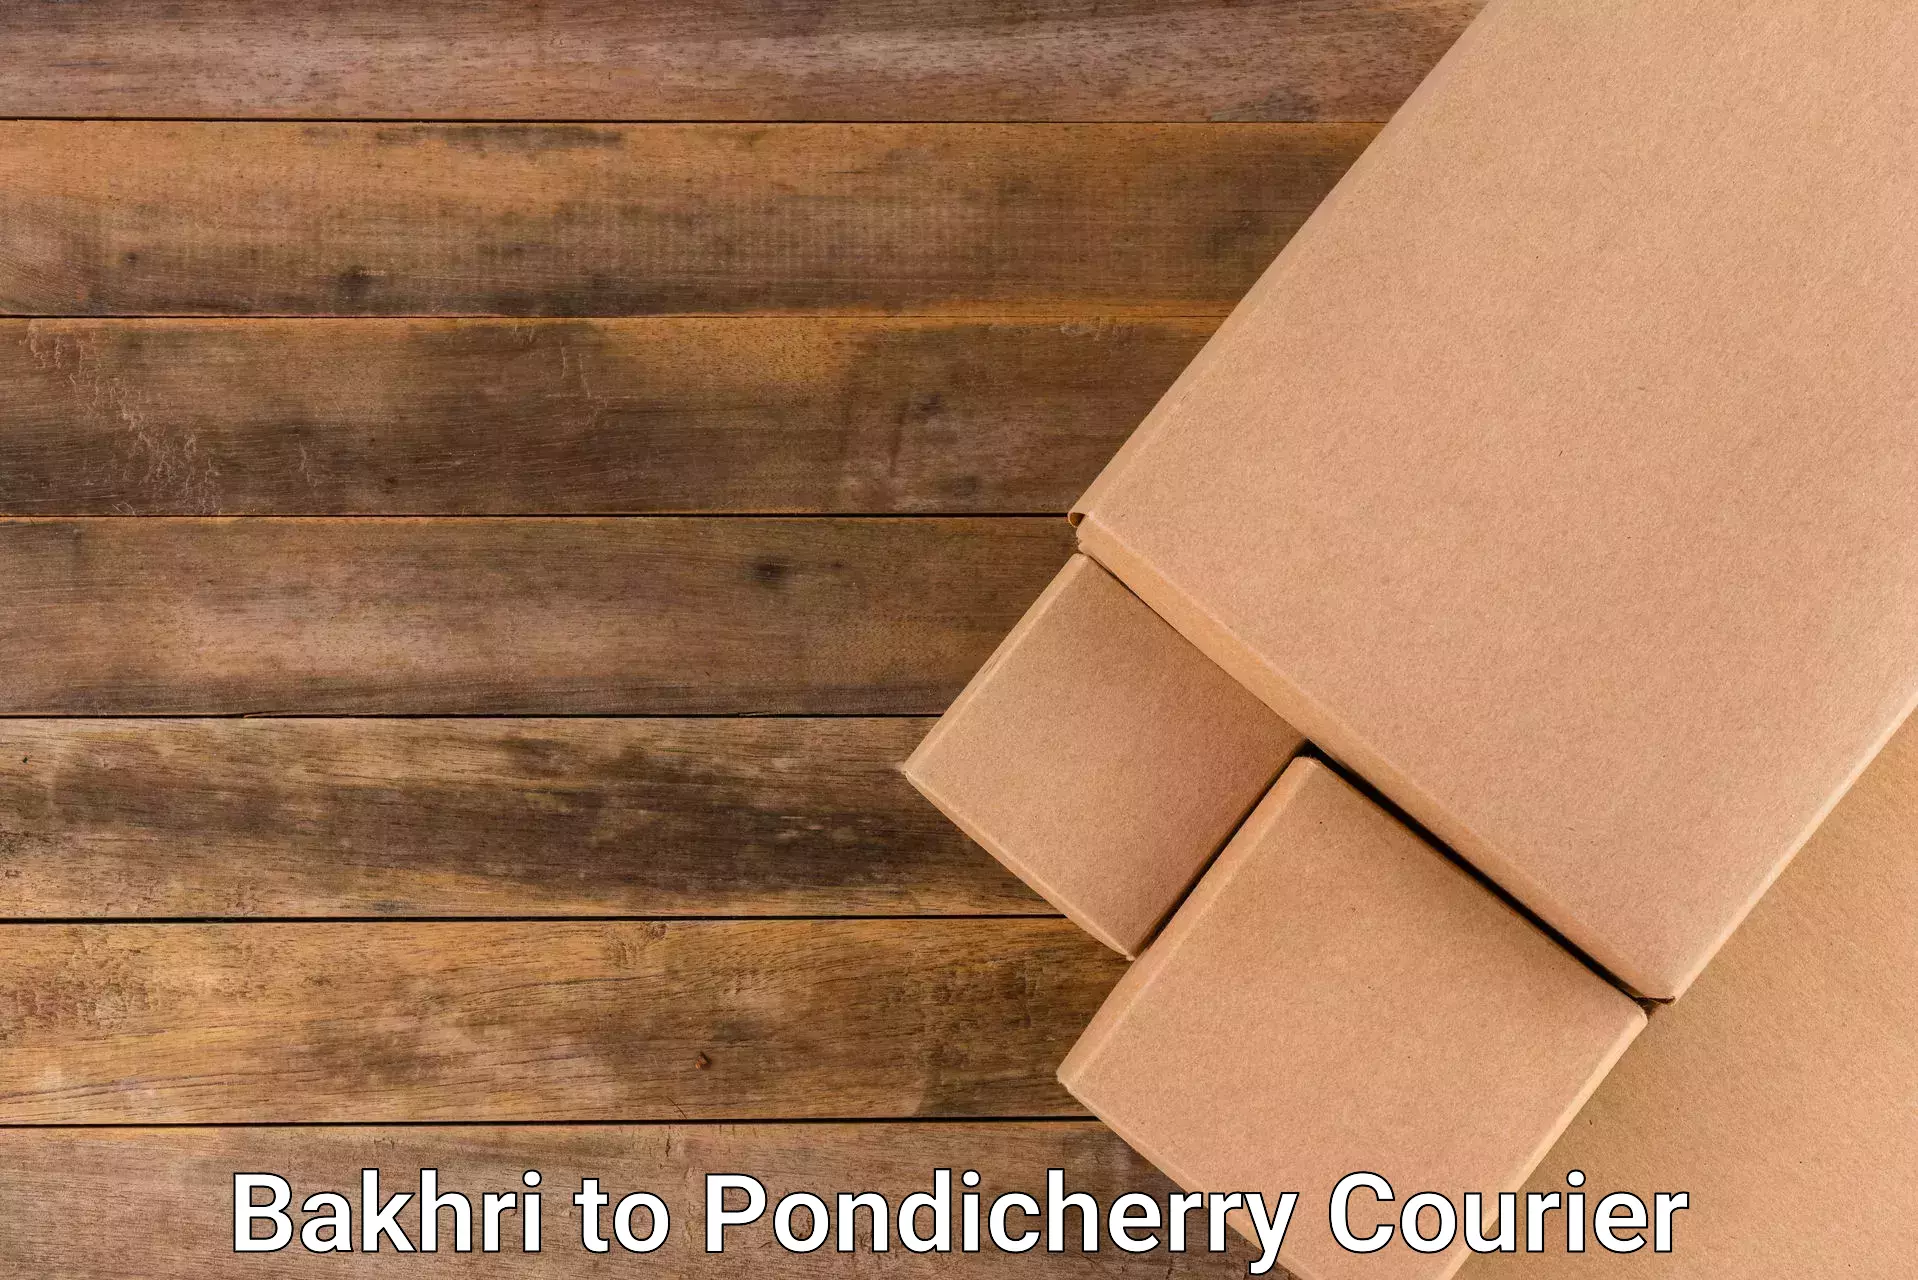 Efficient parcel service Bakhri to Pondicherry